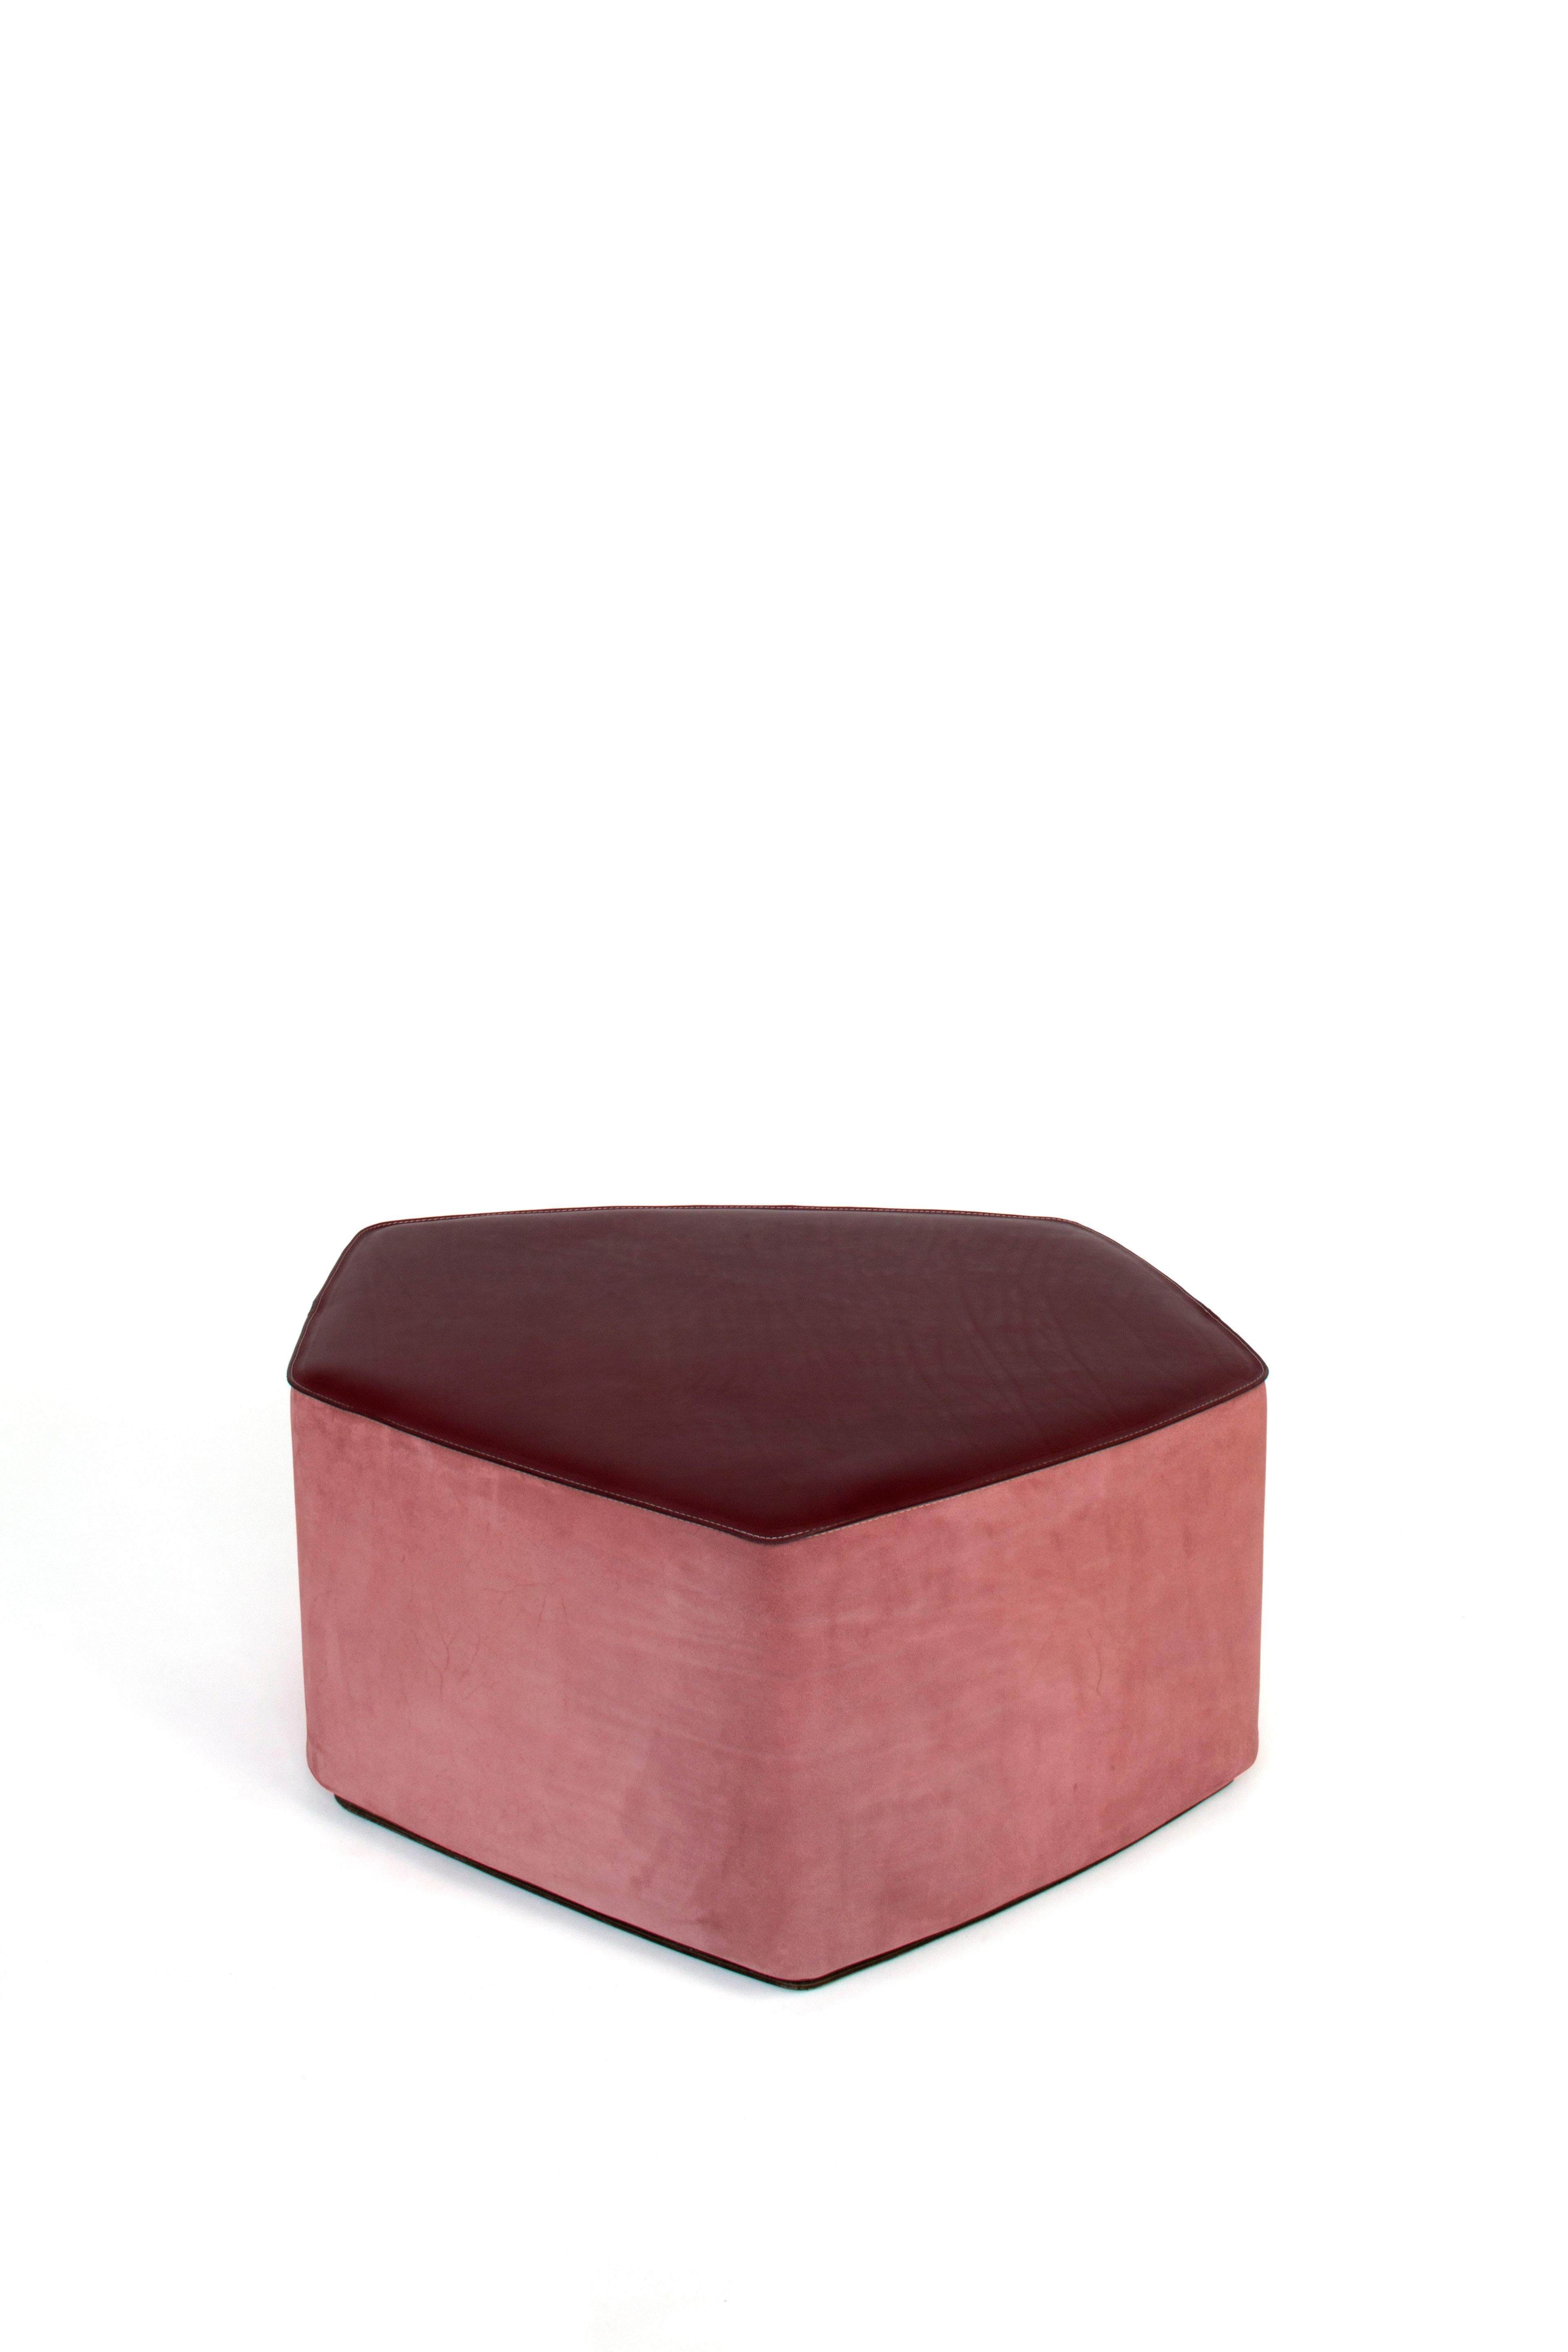 Tabouret en cuir Medium Pouf ! de Nestor Perkal
Dimensions : L 83 x P 75,5 x H 35 cm
Matériaux : cuir, contreplaqué de peuplier, daim.
Disponible dans d'autres couleurs et en 3 tailles.

La collection POUF ! est composée de trois sièges en cuir et